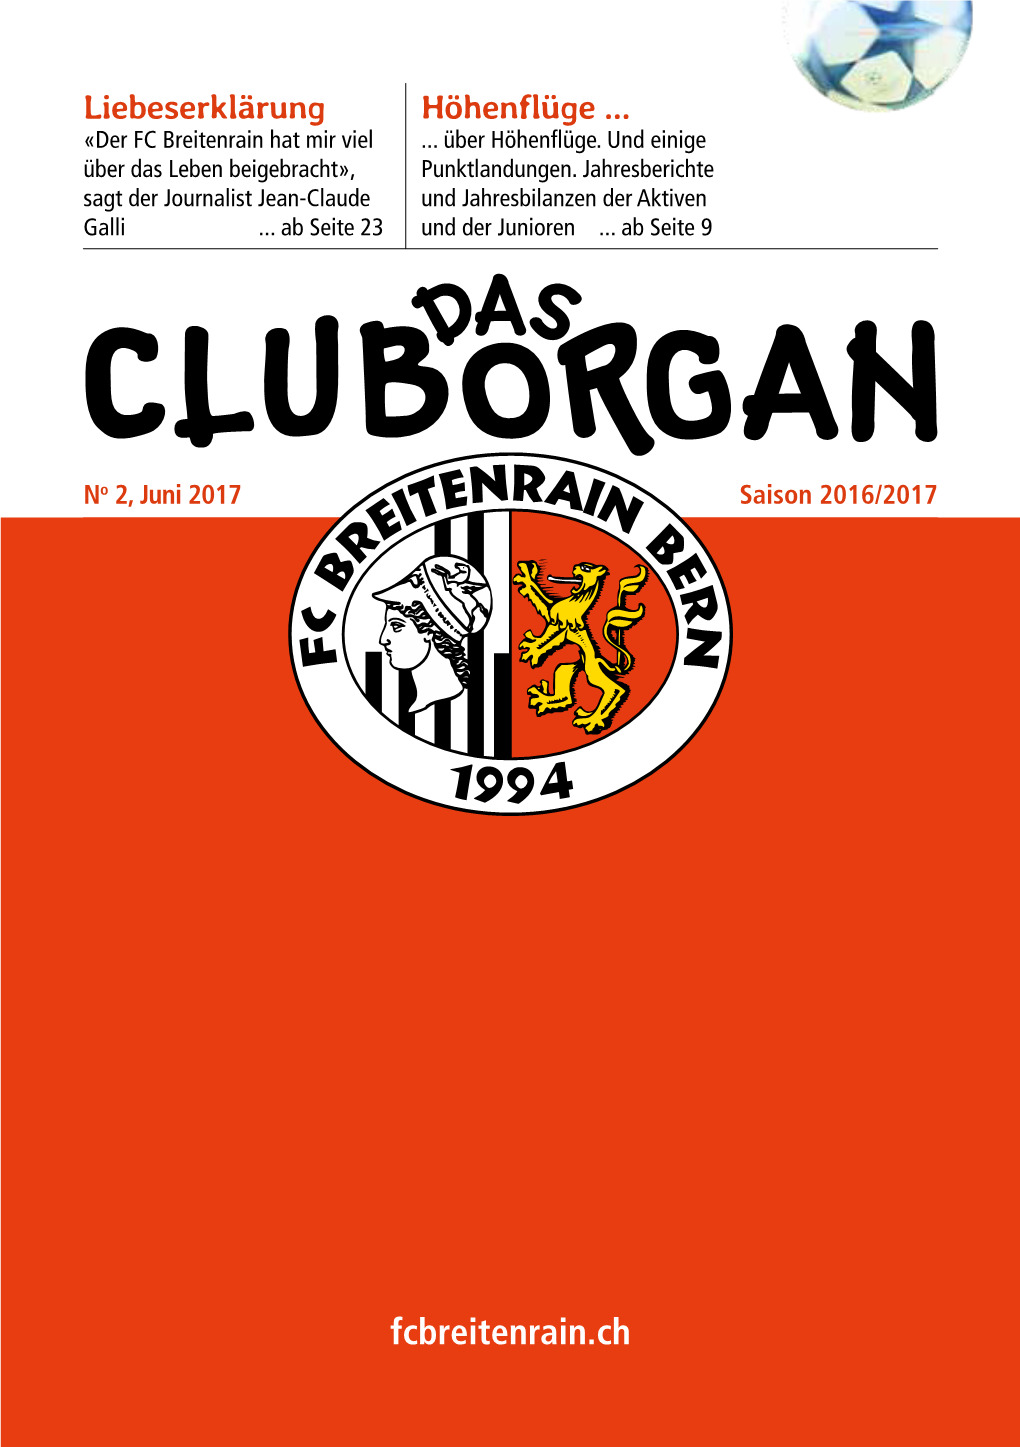 Cluborgan201617-2.Pdf